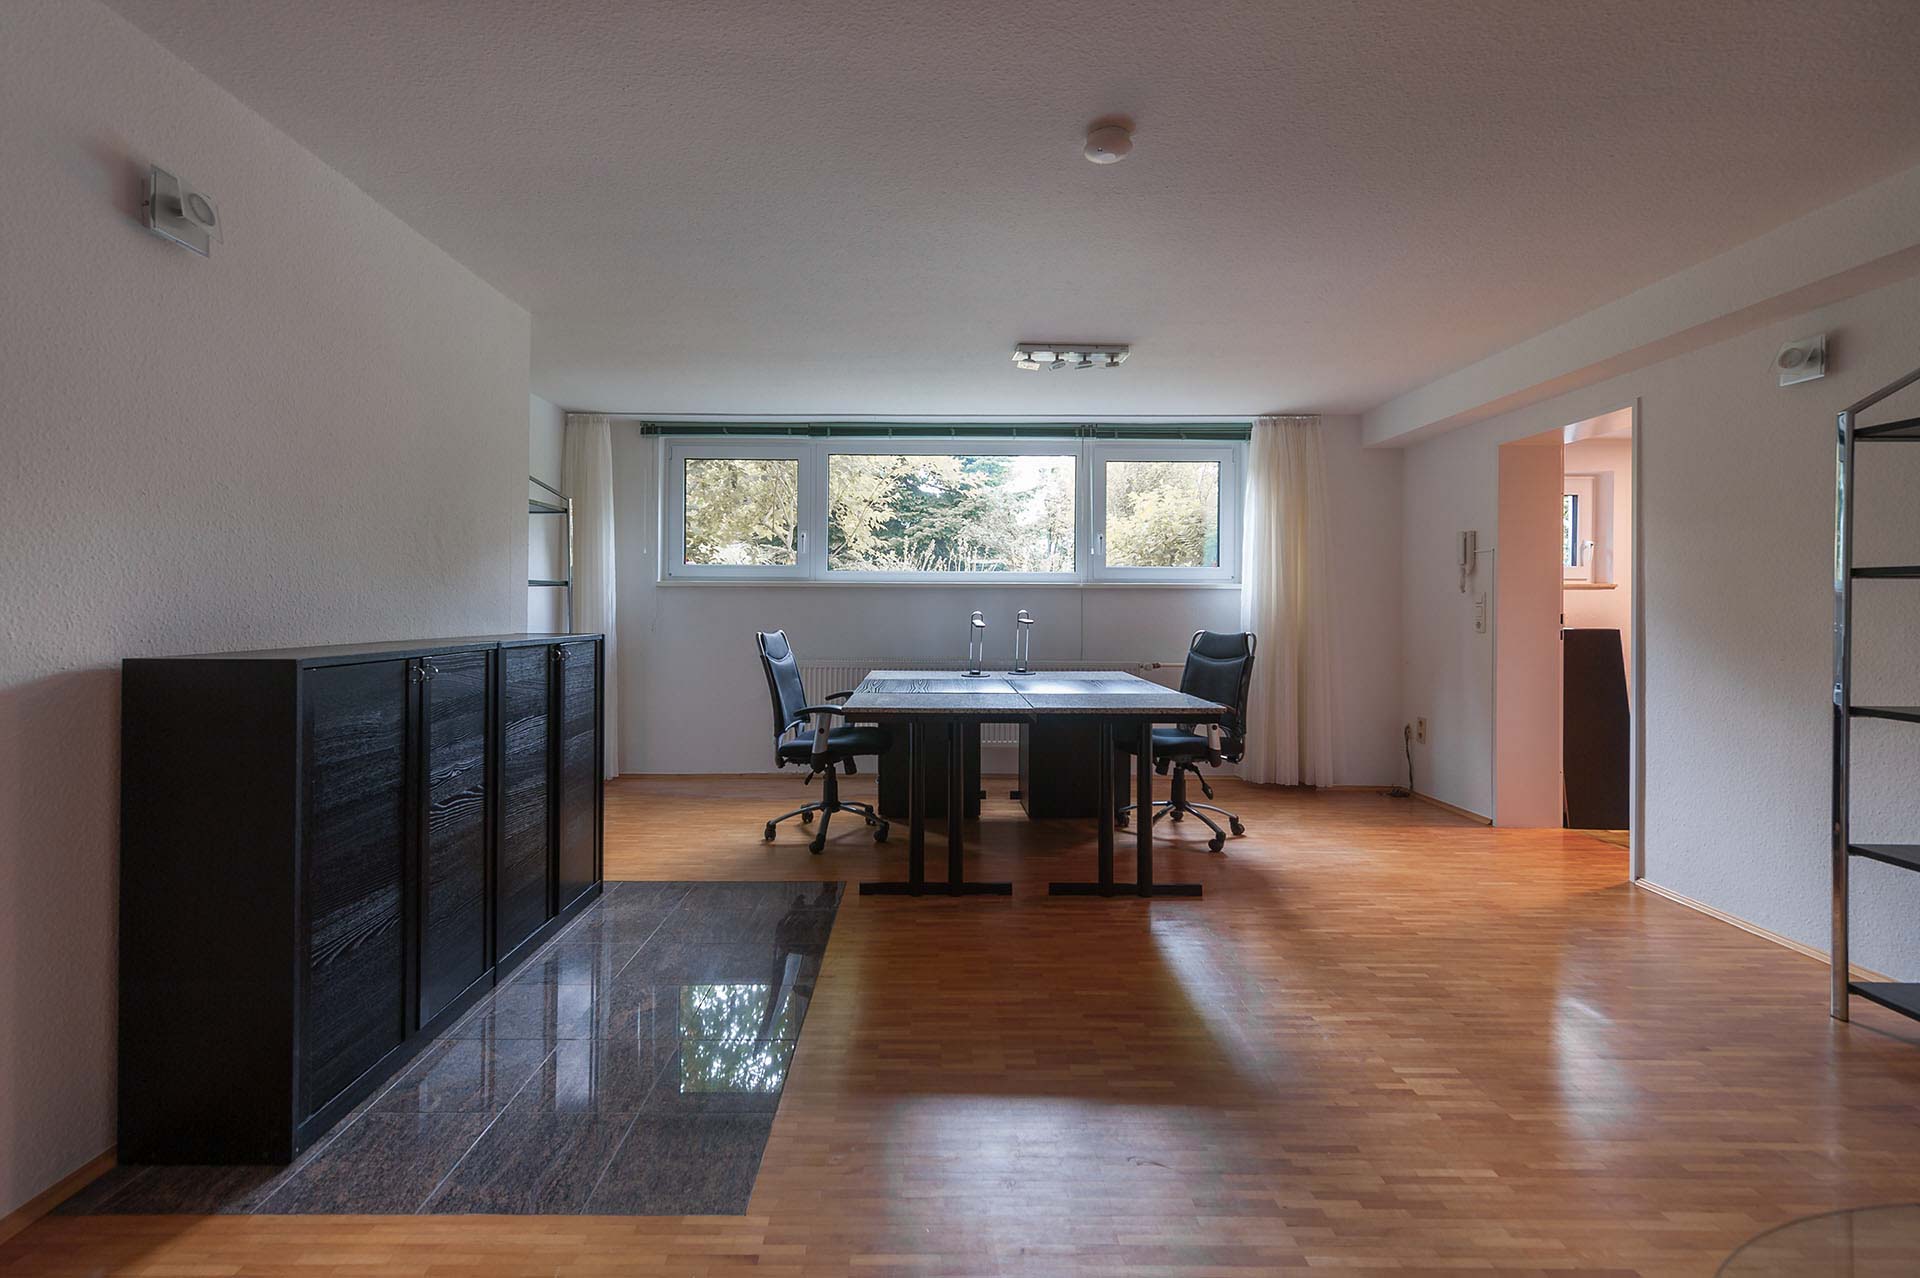 Immobilienfoto: Blick in das Büro mit Parkett-Boden / Gardinen zur Seite geschoben